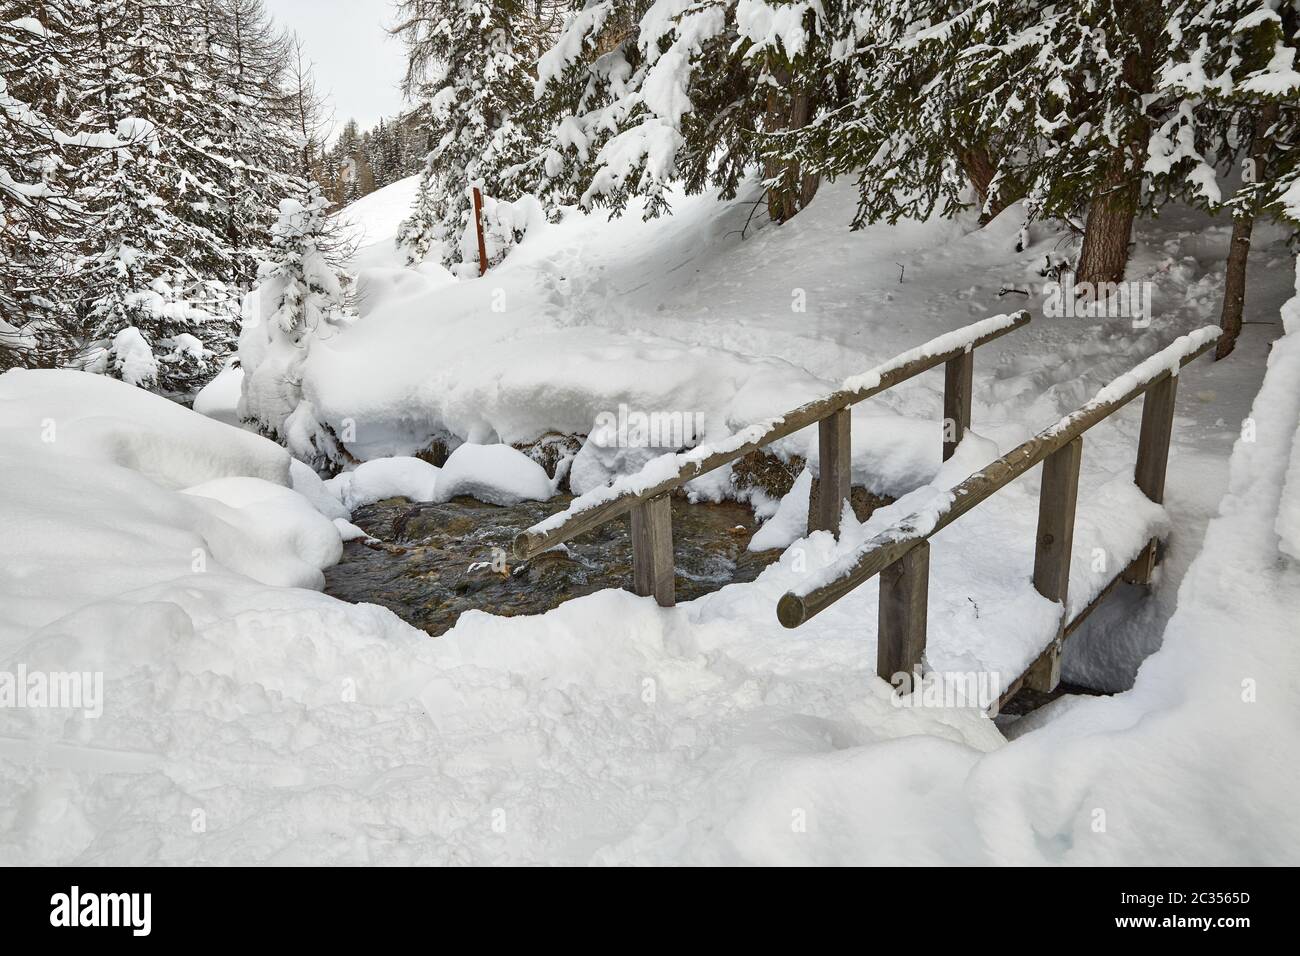 Sentier de randonnée en montagne enneigé avec pont sur un détroit, neige profonde Banque D'Images